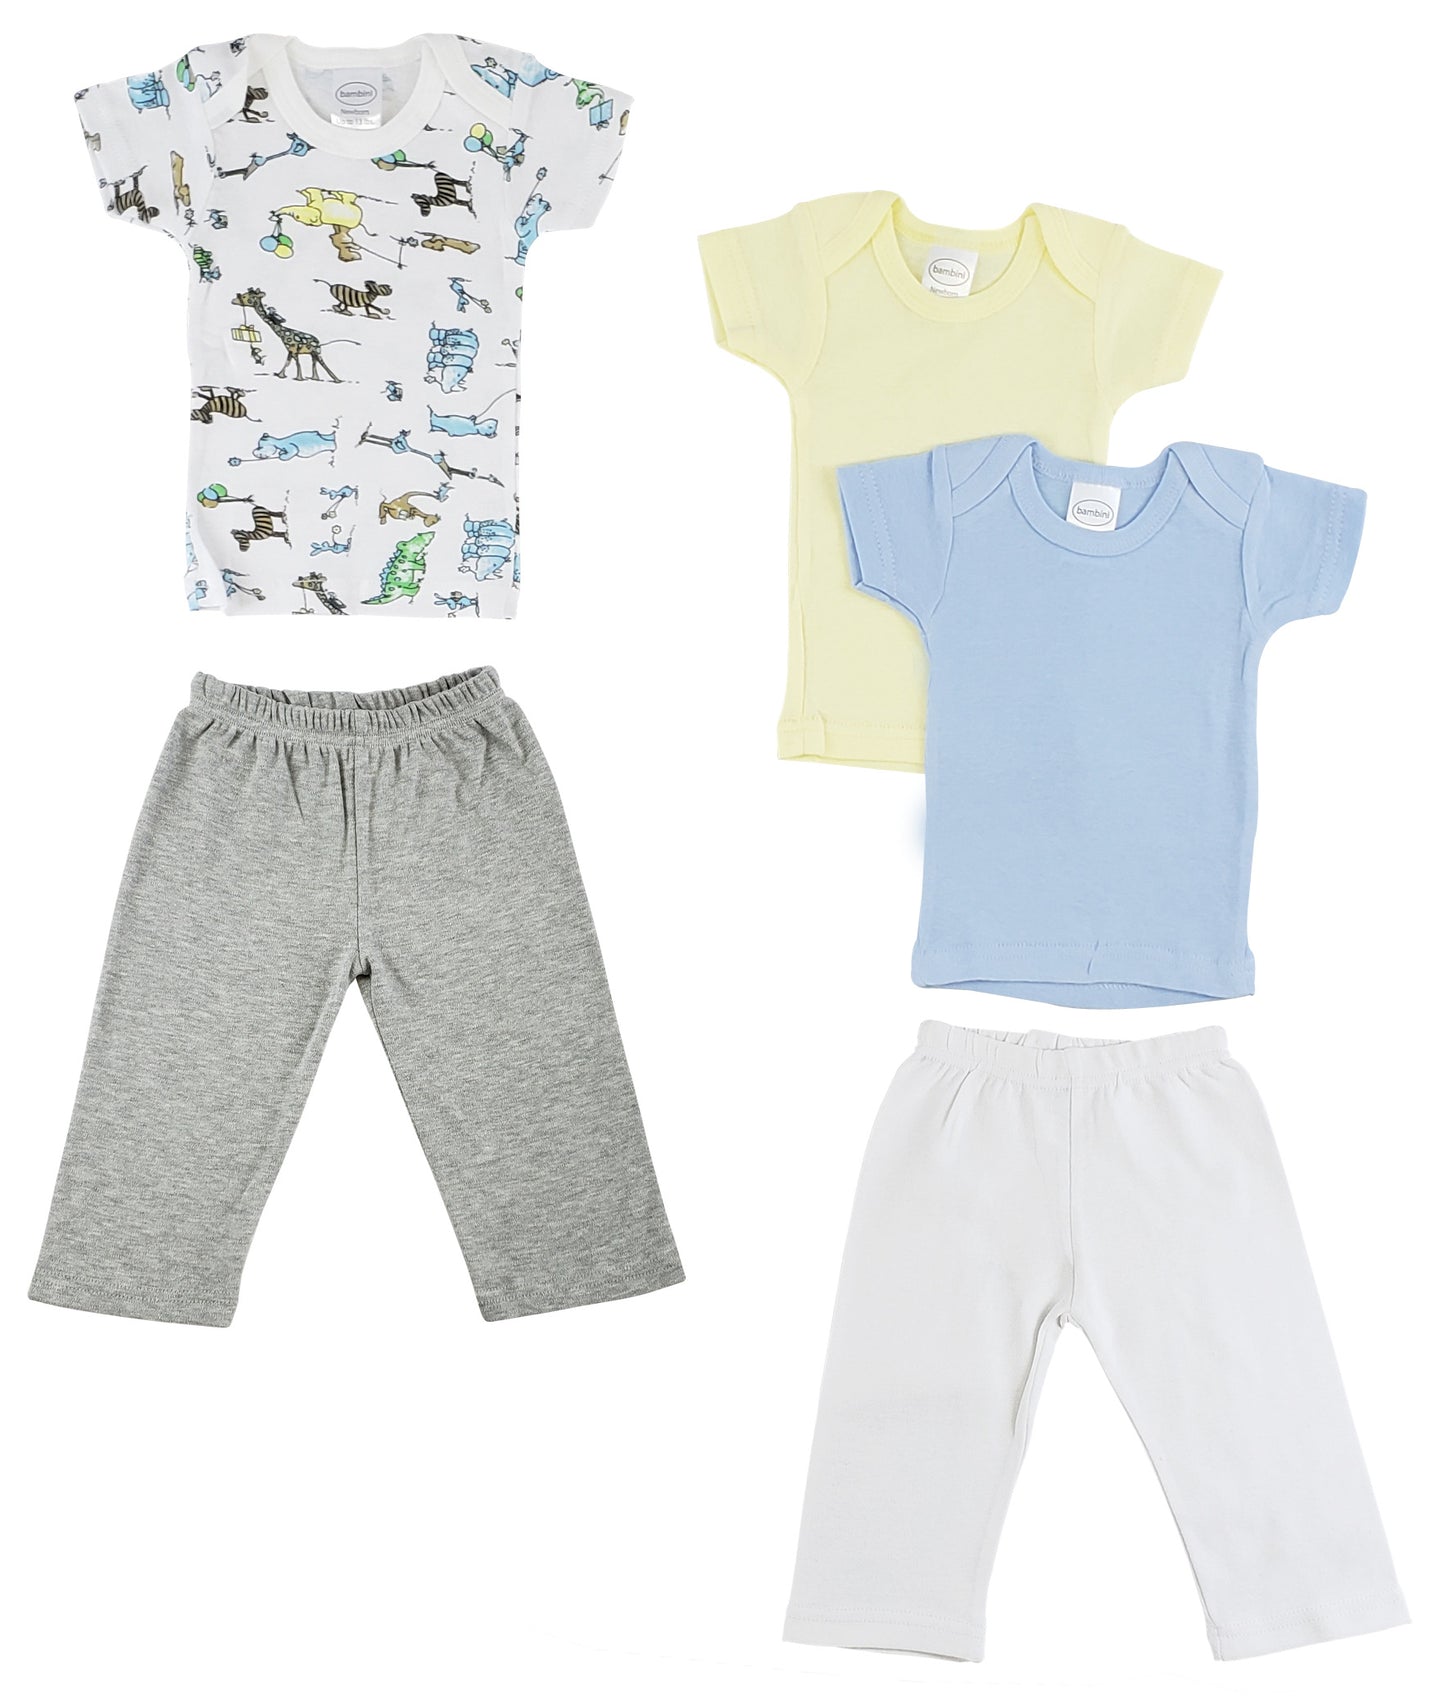 Infant Girls T-Shirts and Track Sweatpants CS_0465